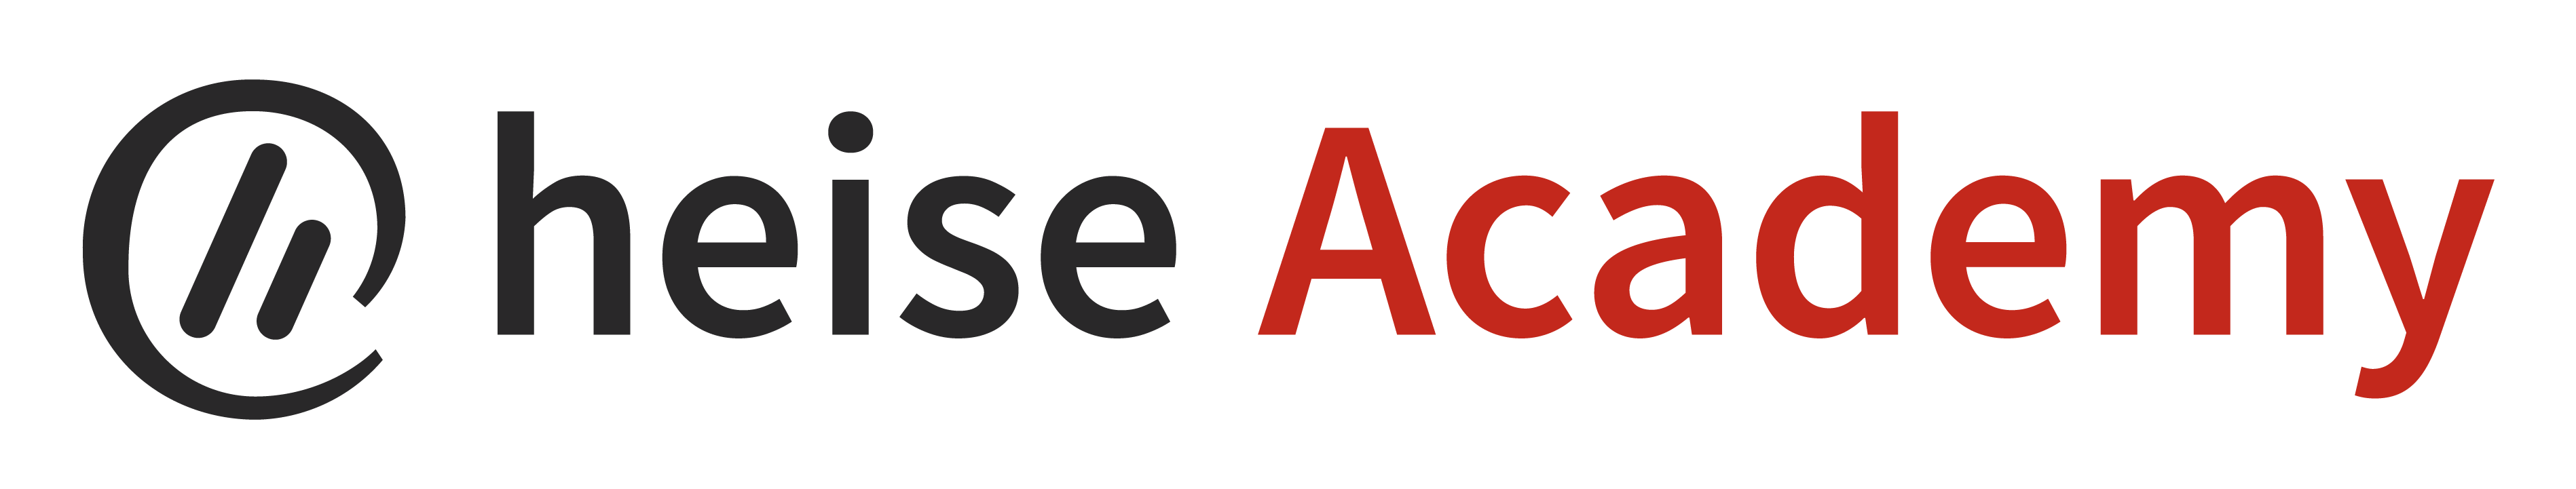 heise Academy Logo